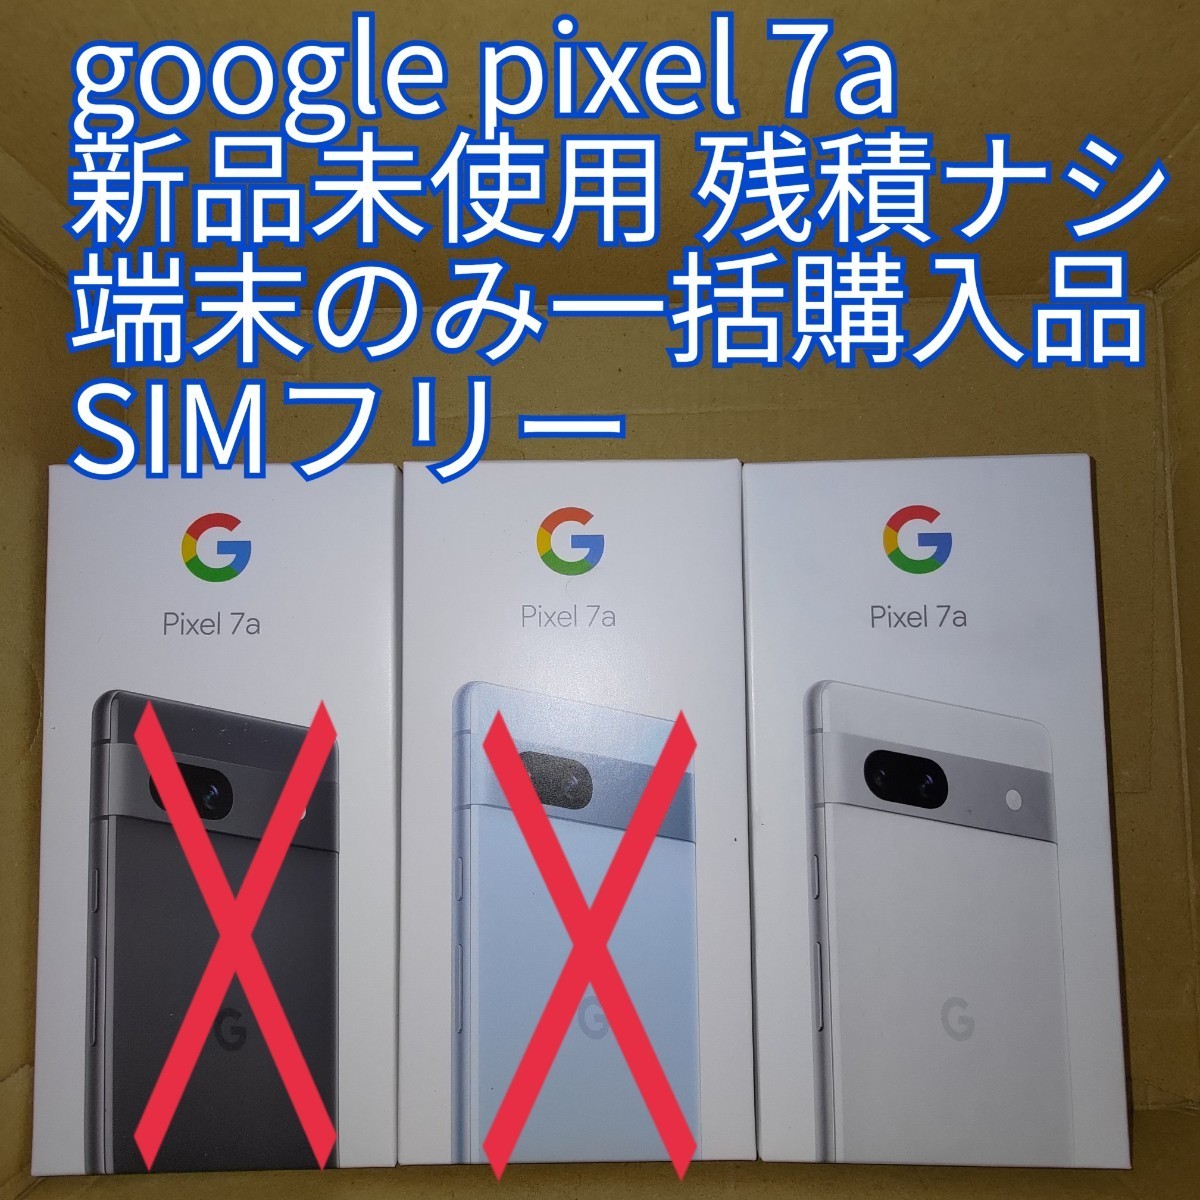 新品未使用 Google pixel 7a 本体 128GB SIMフリー snow 白 1台